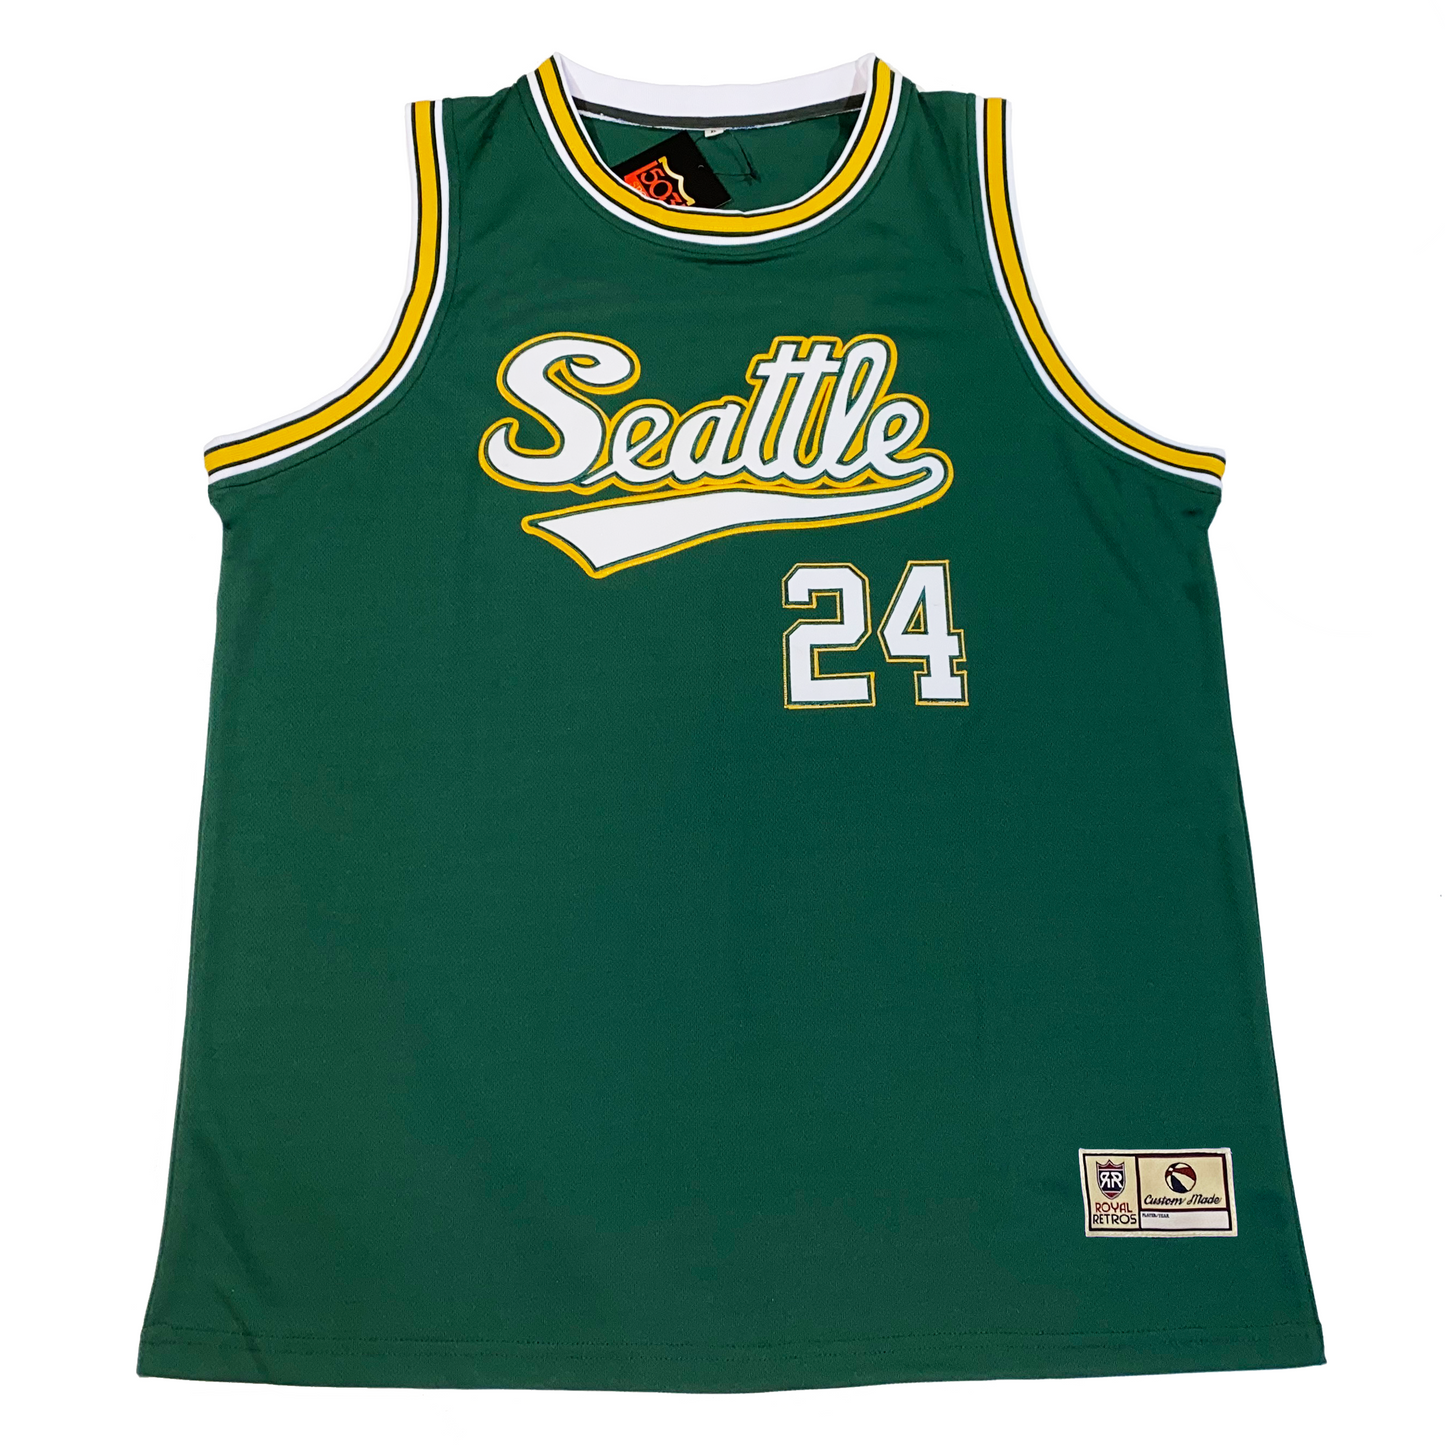 Seattle Basketball Jersey